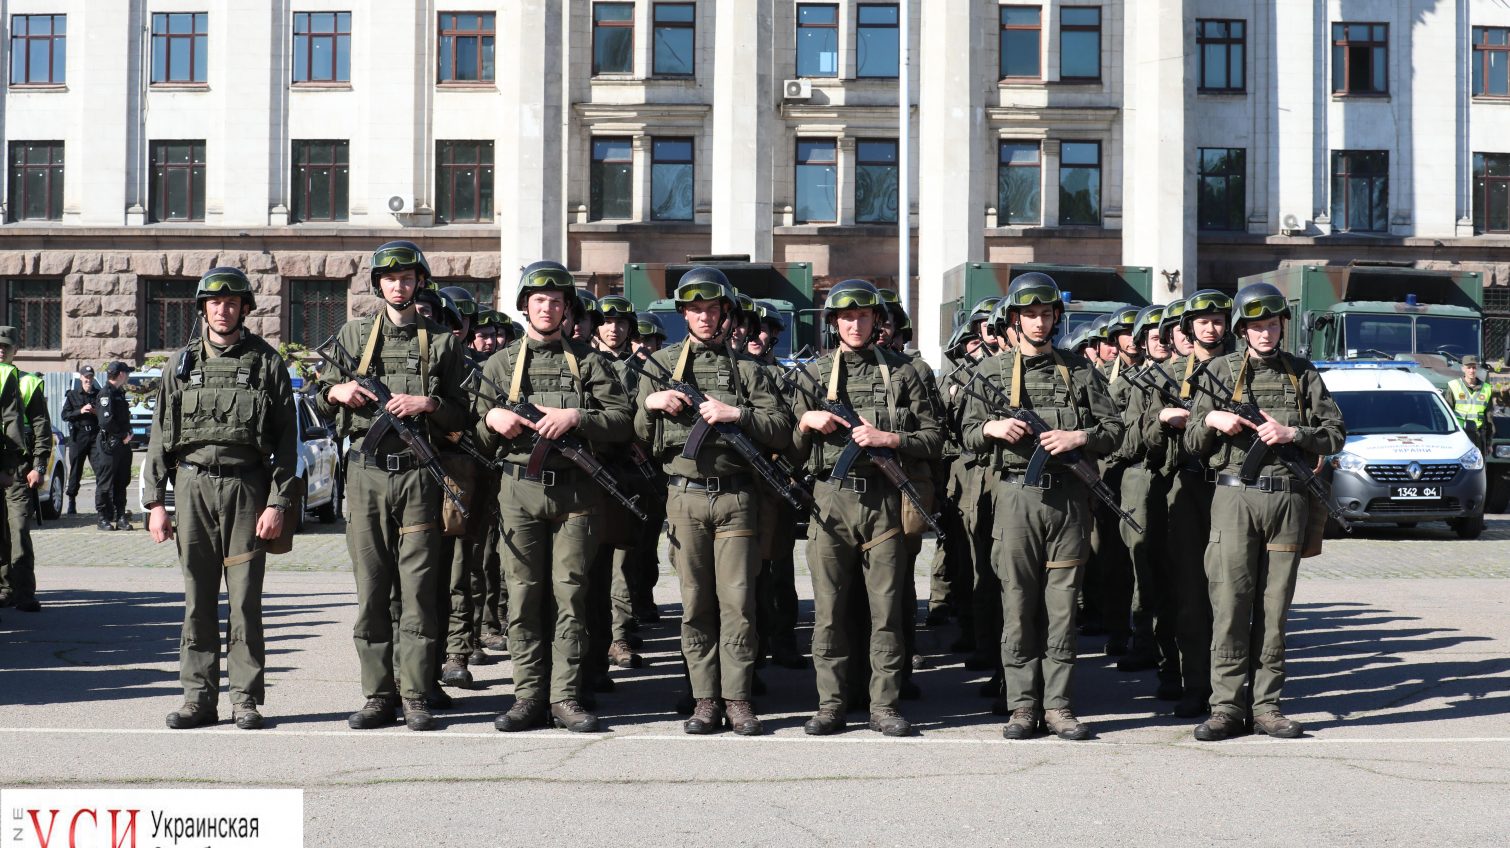 Итоги недели:  в преддверии годовщины трагедии 2 мая активизировались антиукраинские призывы, правоохранители готовят беспрецедентные меры безопасности «фото»